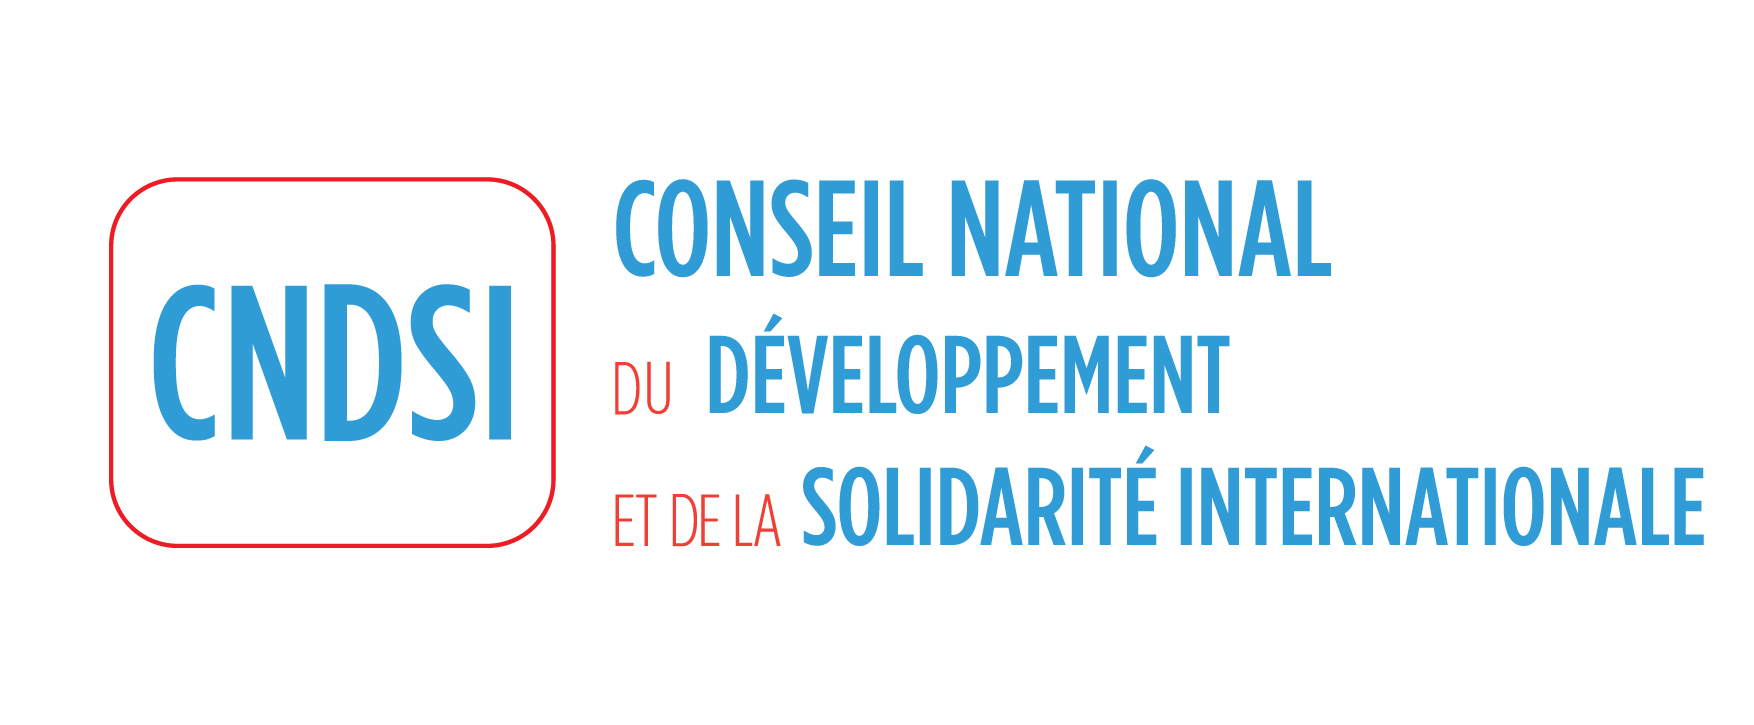 CNDSI - Conseil National du Développement et de la Solidarité internationale